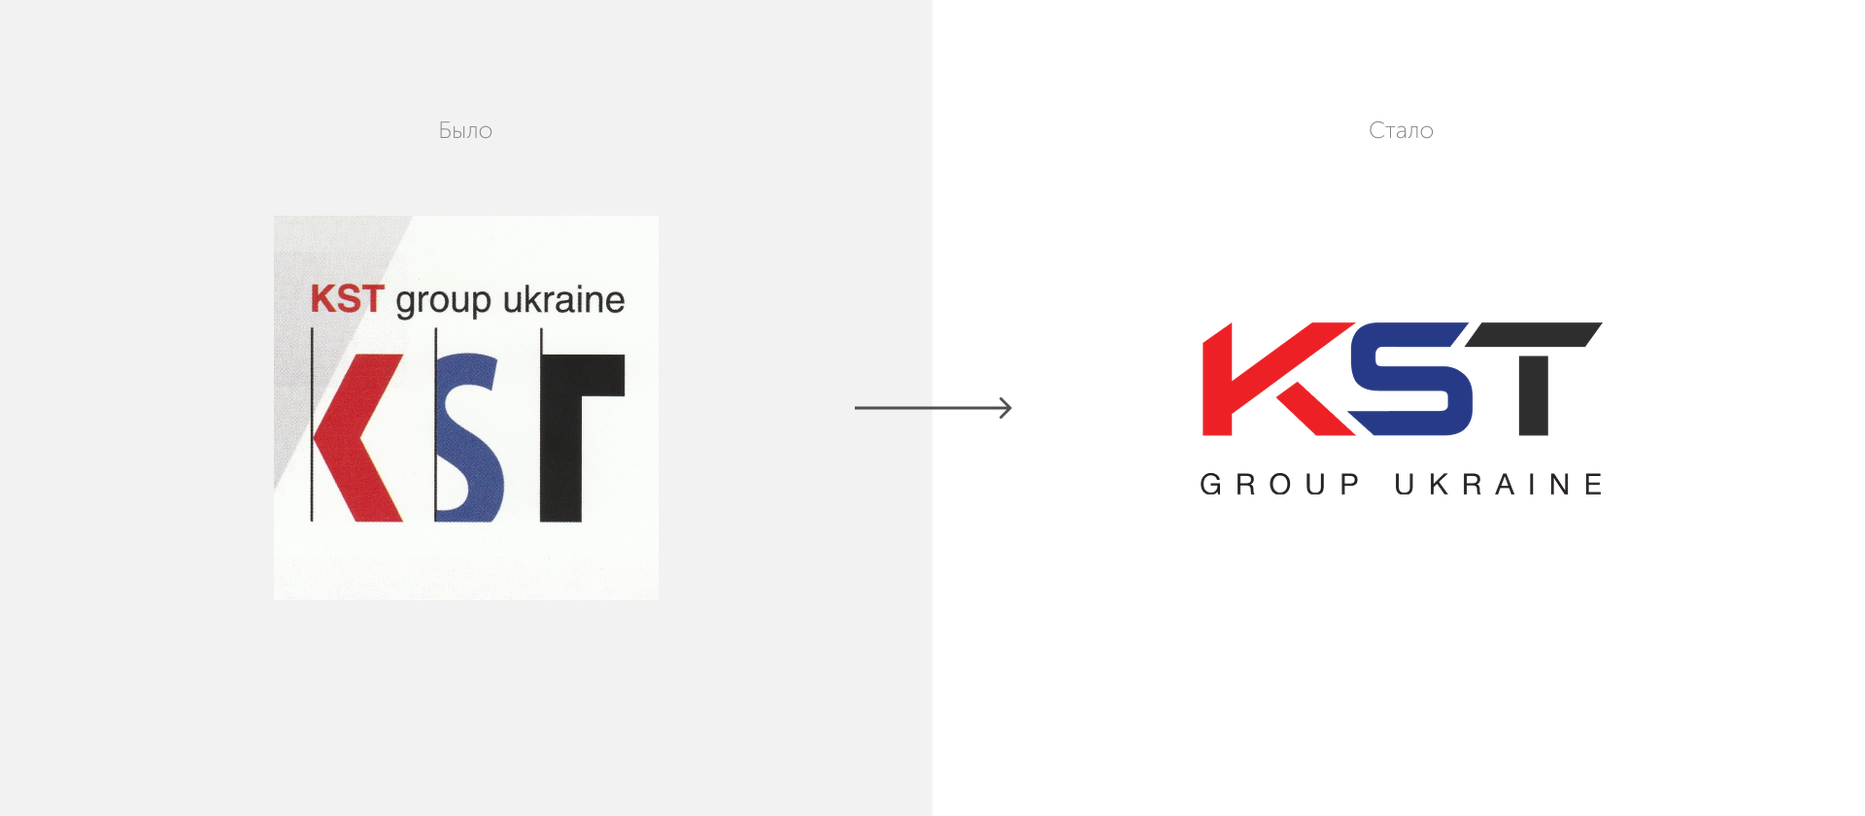 Зміцнення позицій KST GROUP на ринку. Редизайн логотипу, розробка фірмового стилю та маркетинг-кіт — Rubarb - Зображення - 3